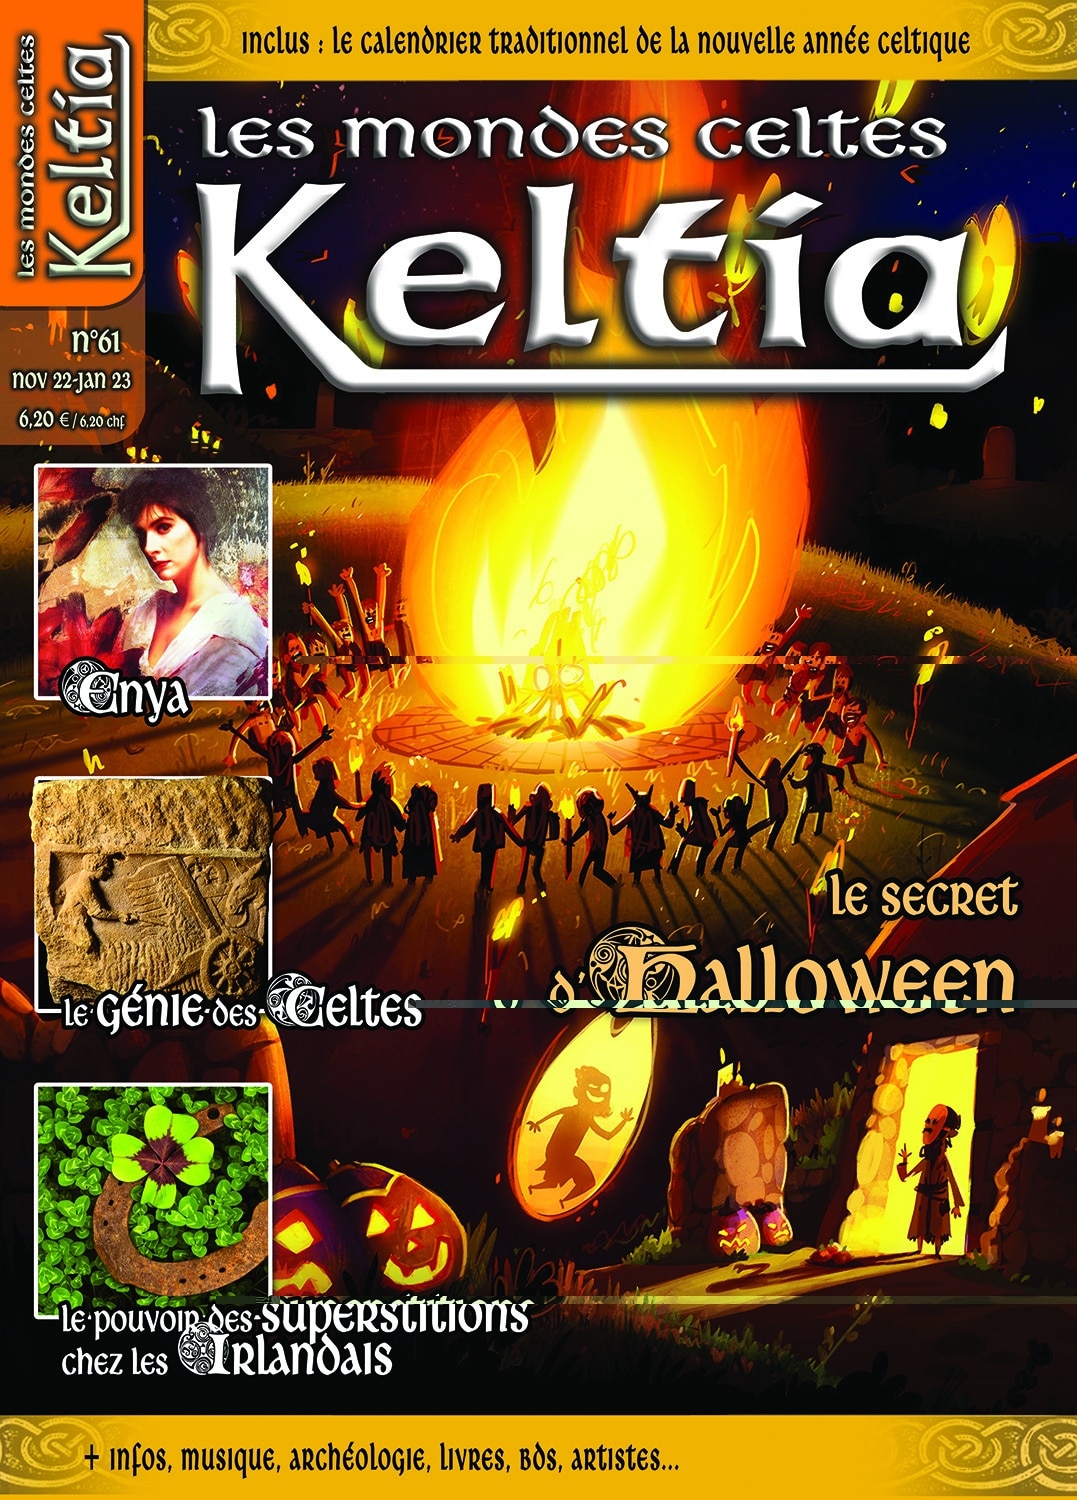 Keltia, les Mondes celtes : le n°60 évoque le secret d'Halloween, Enya, le  génie des Celtes